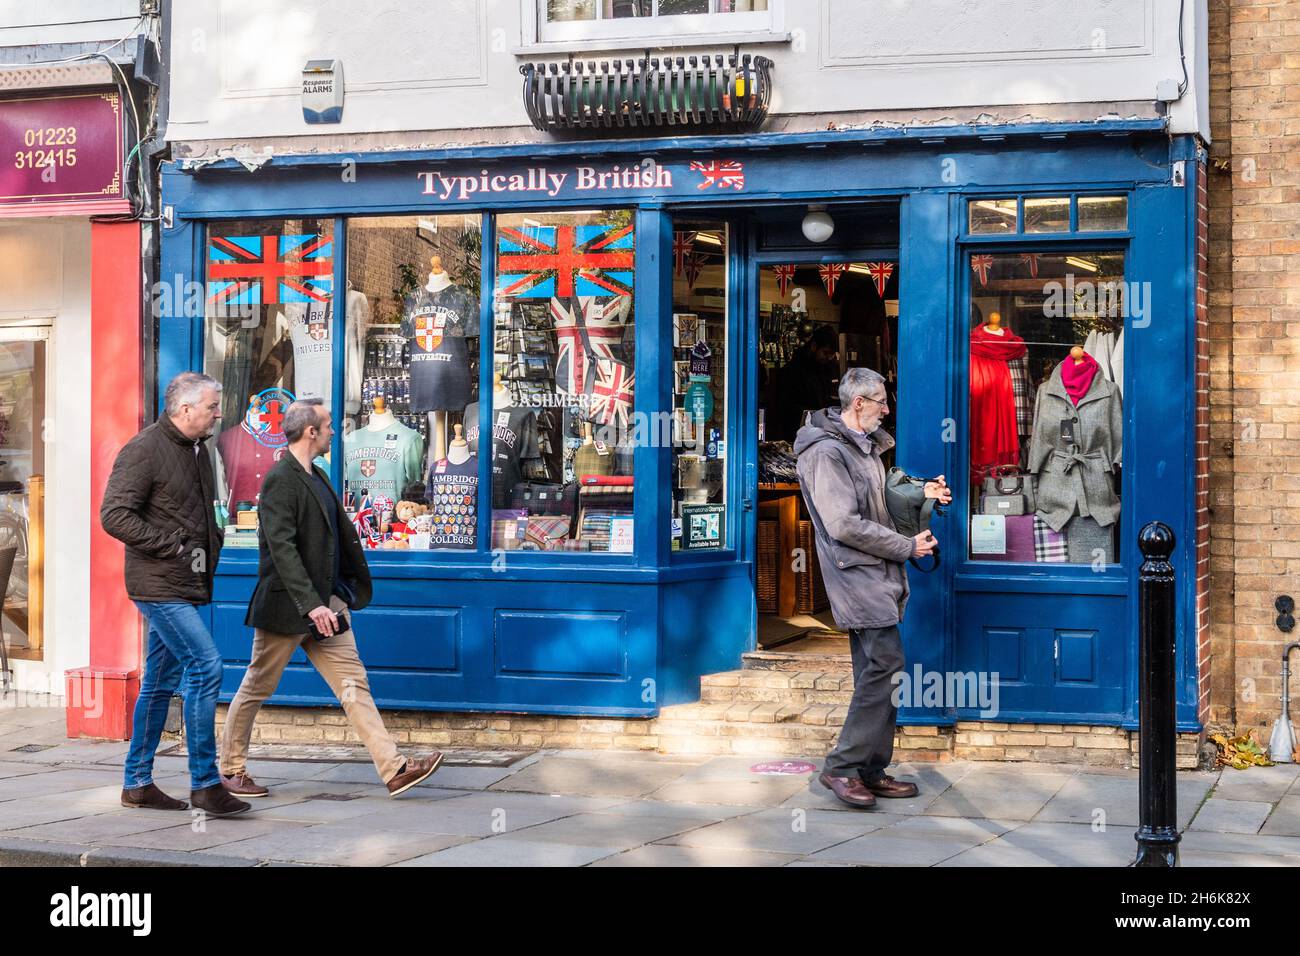 Les gens regardent des souvenirs à vendre dans la boutique de souvenirs « typiquement britannique », Cambridge, Royaume-Uni. Banque D'Images